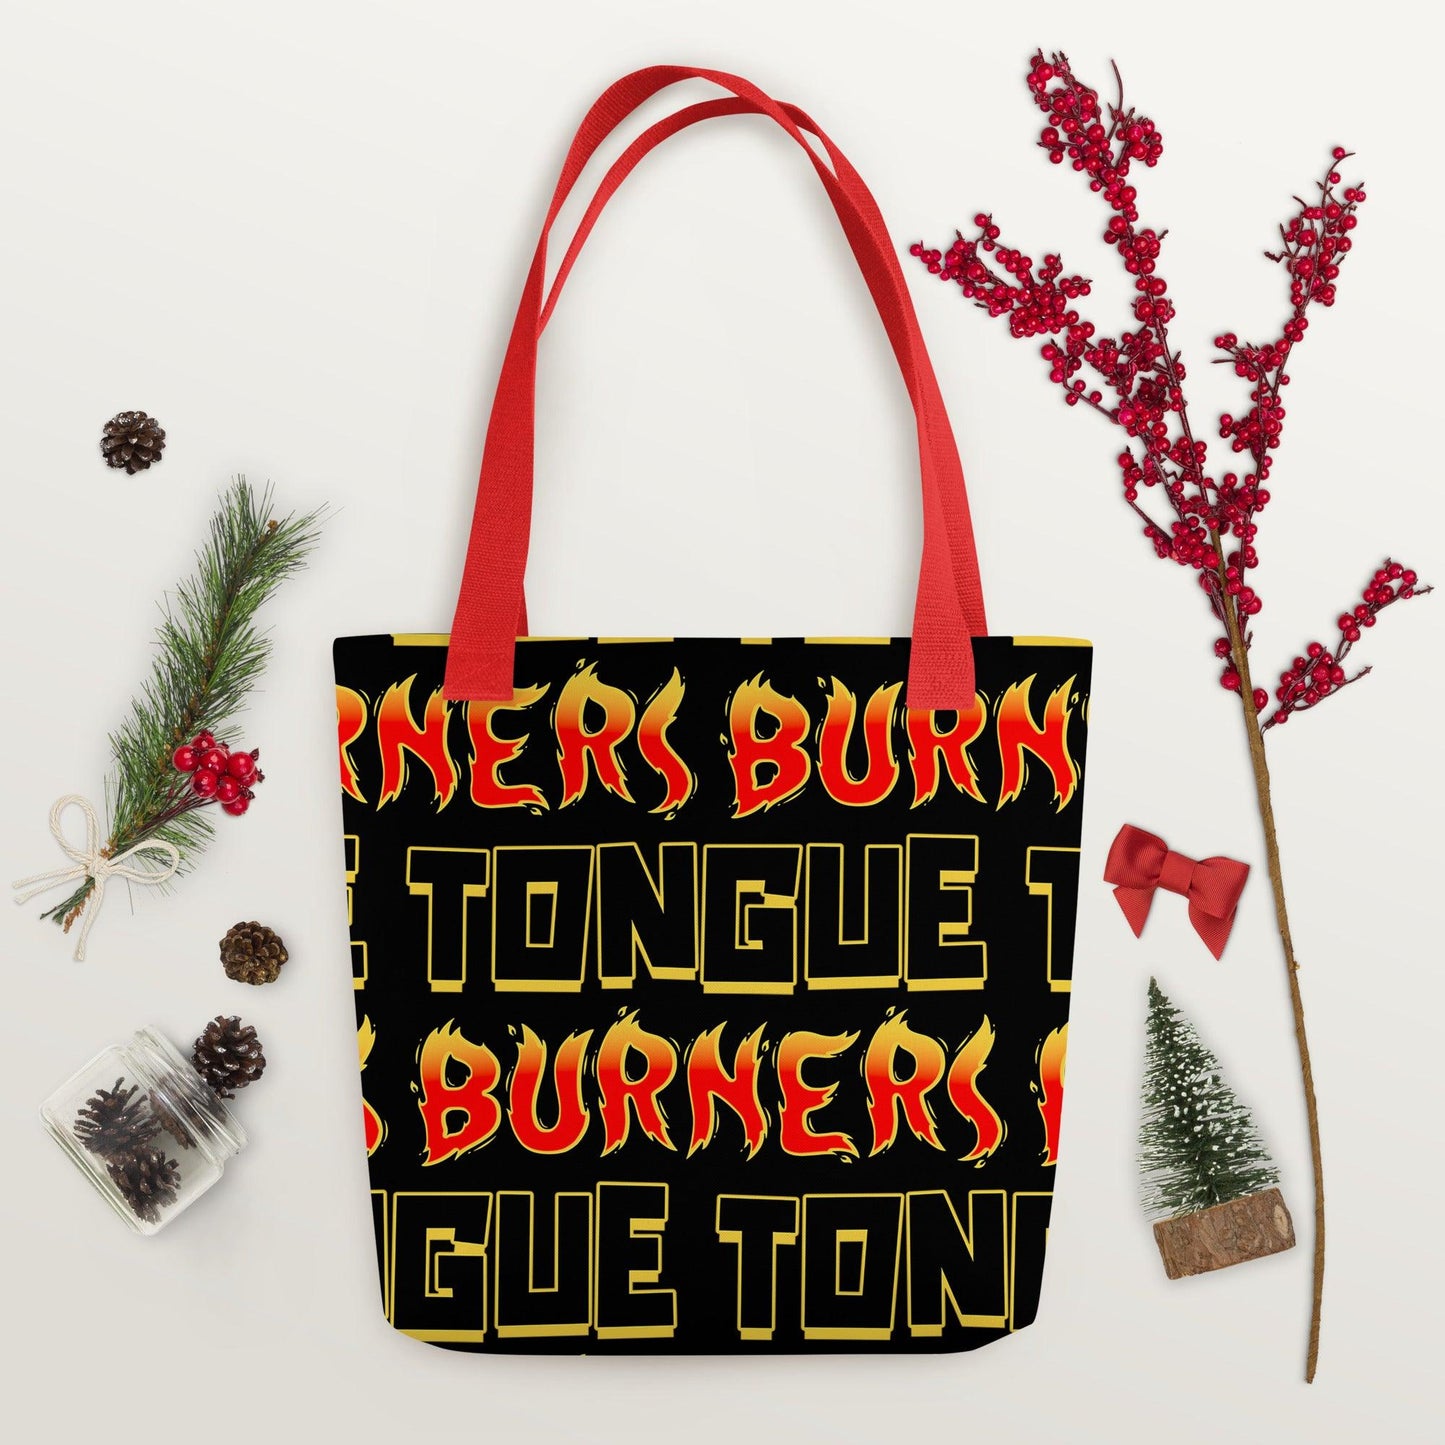 Tongue Burners Tote bag